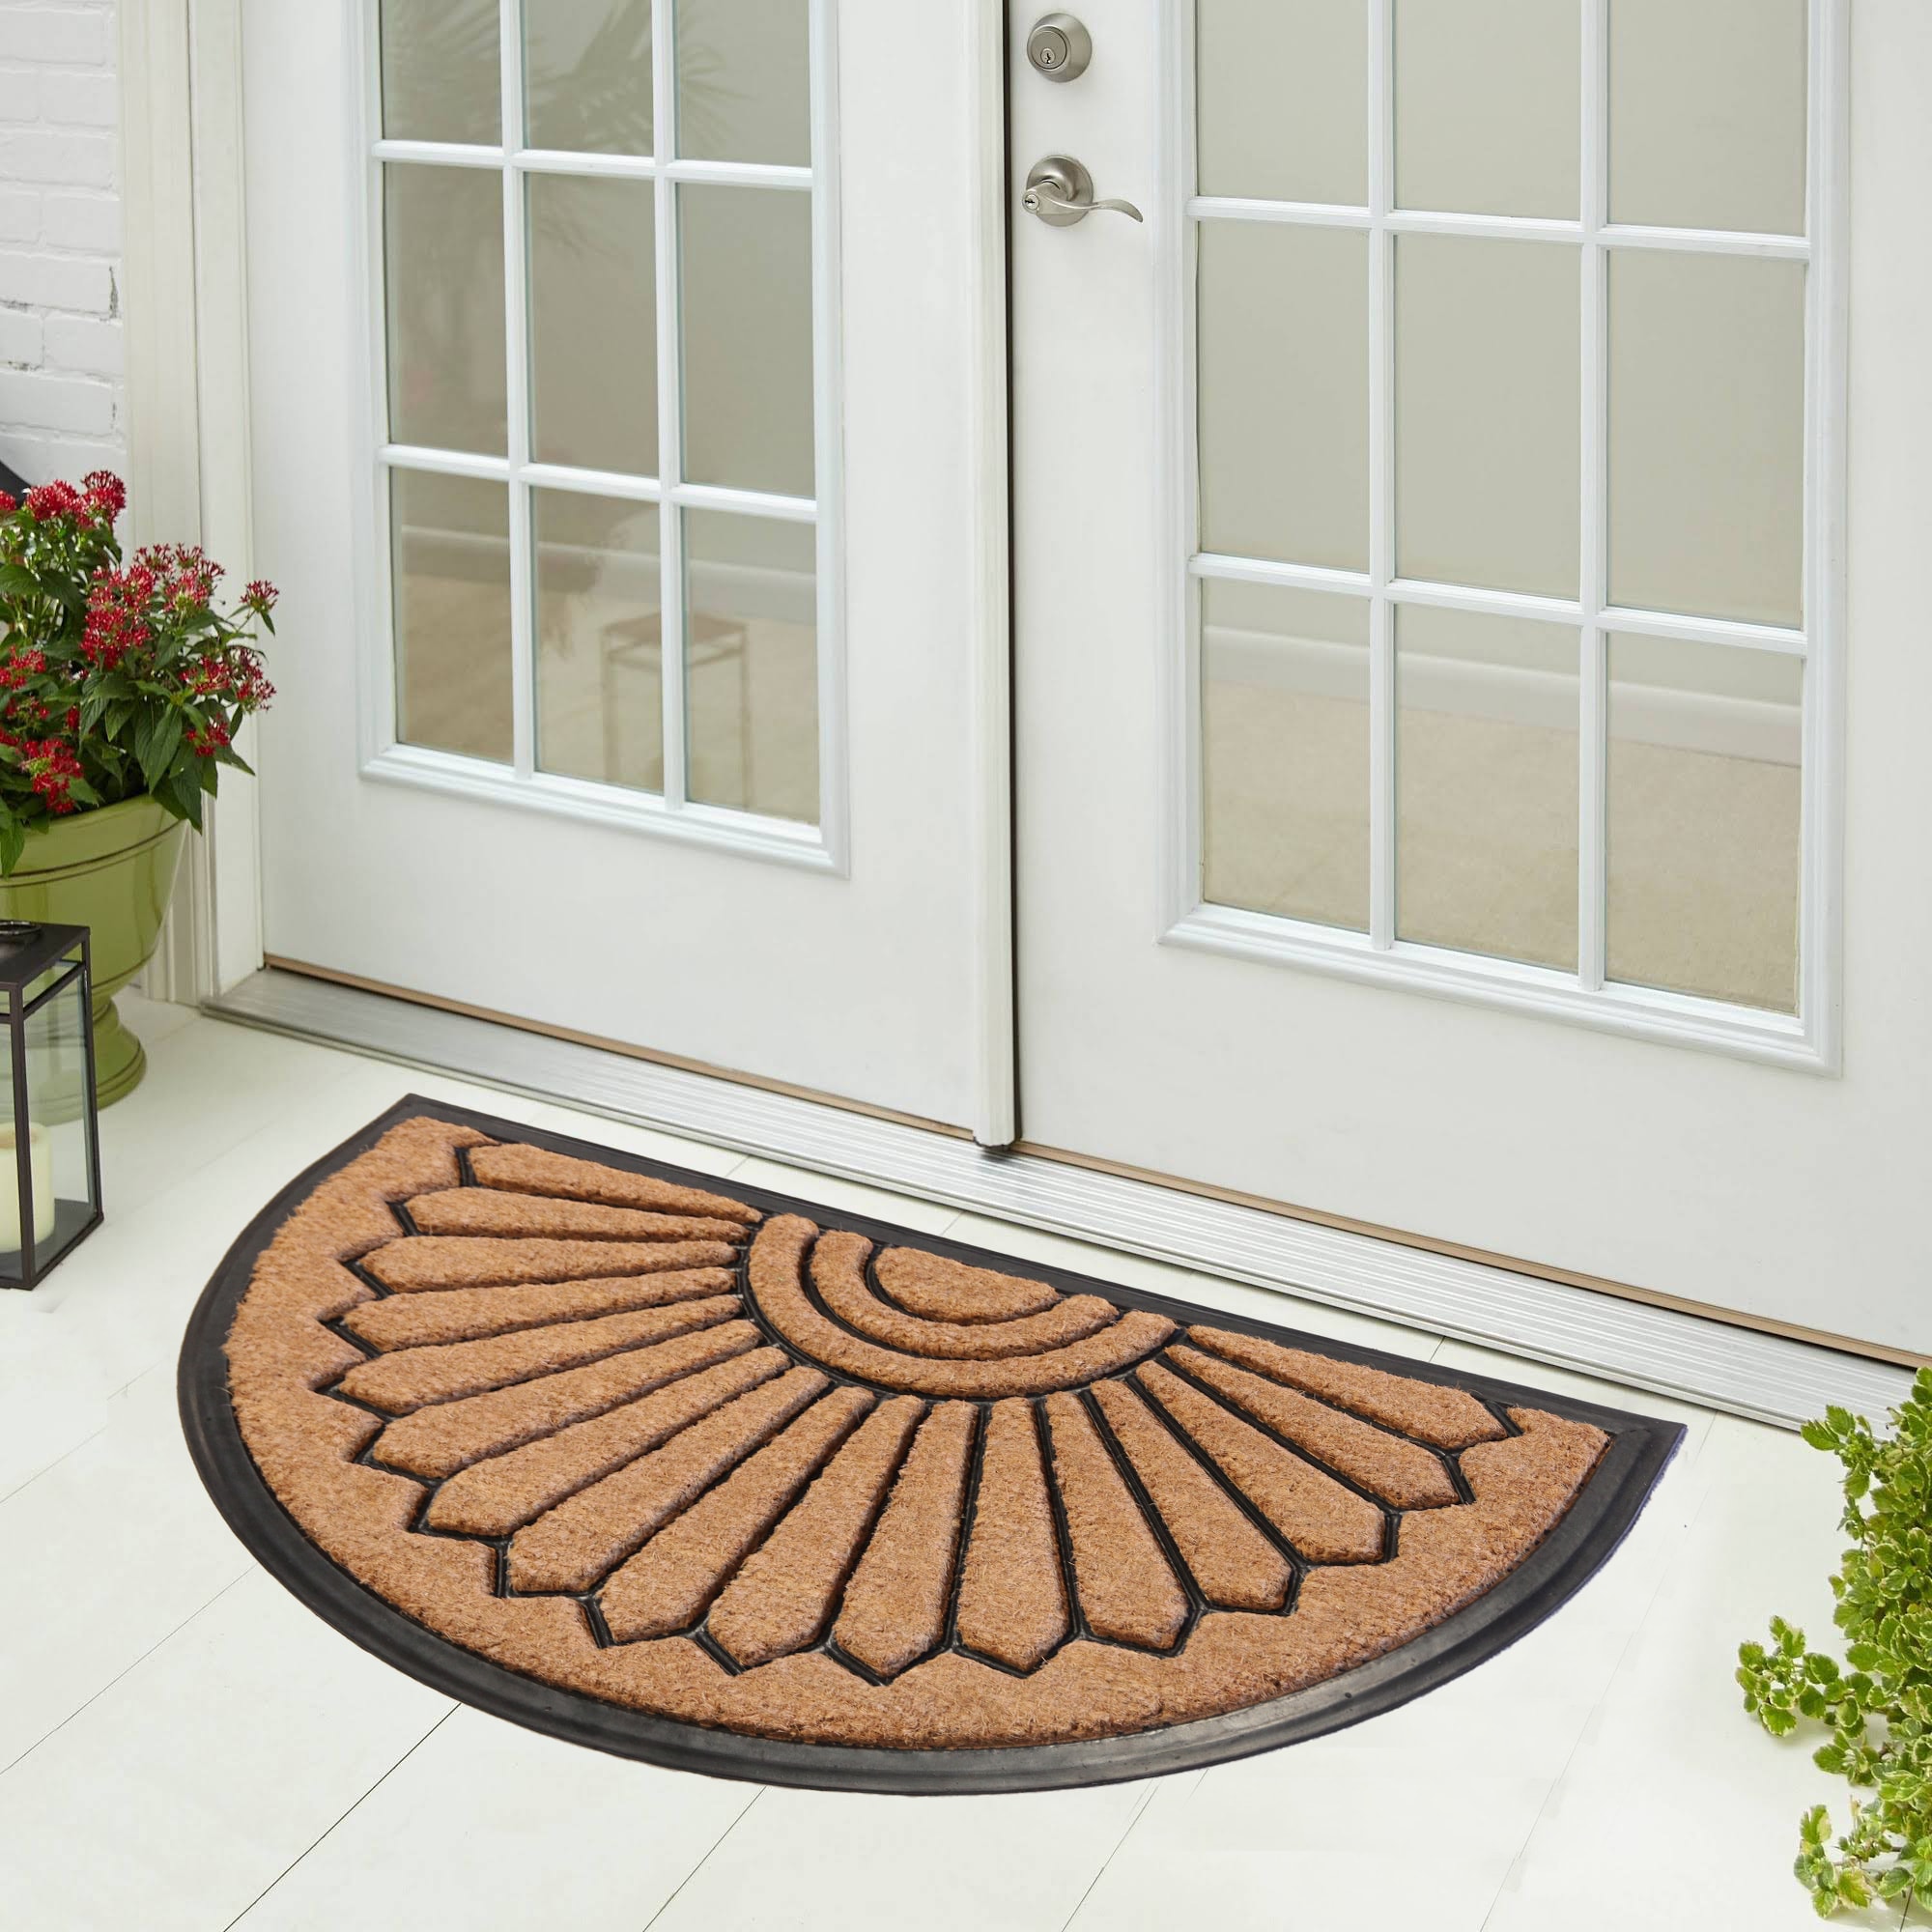 Abstract Half Moon Doormat Indoor & Outdoor Doormat Long Lasting